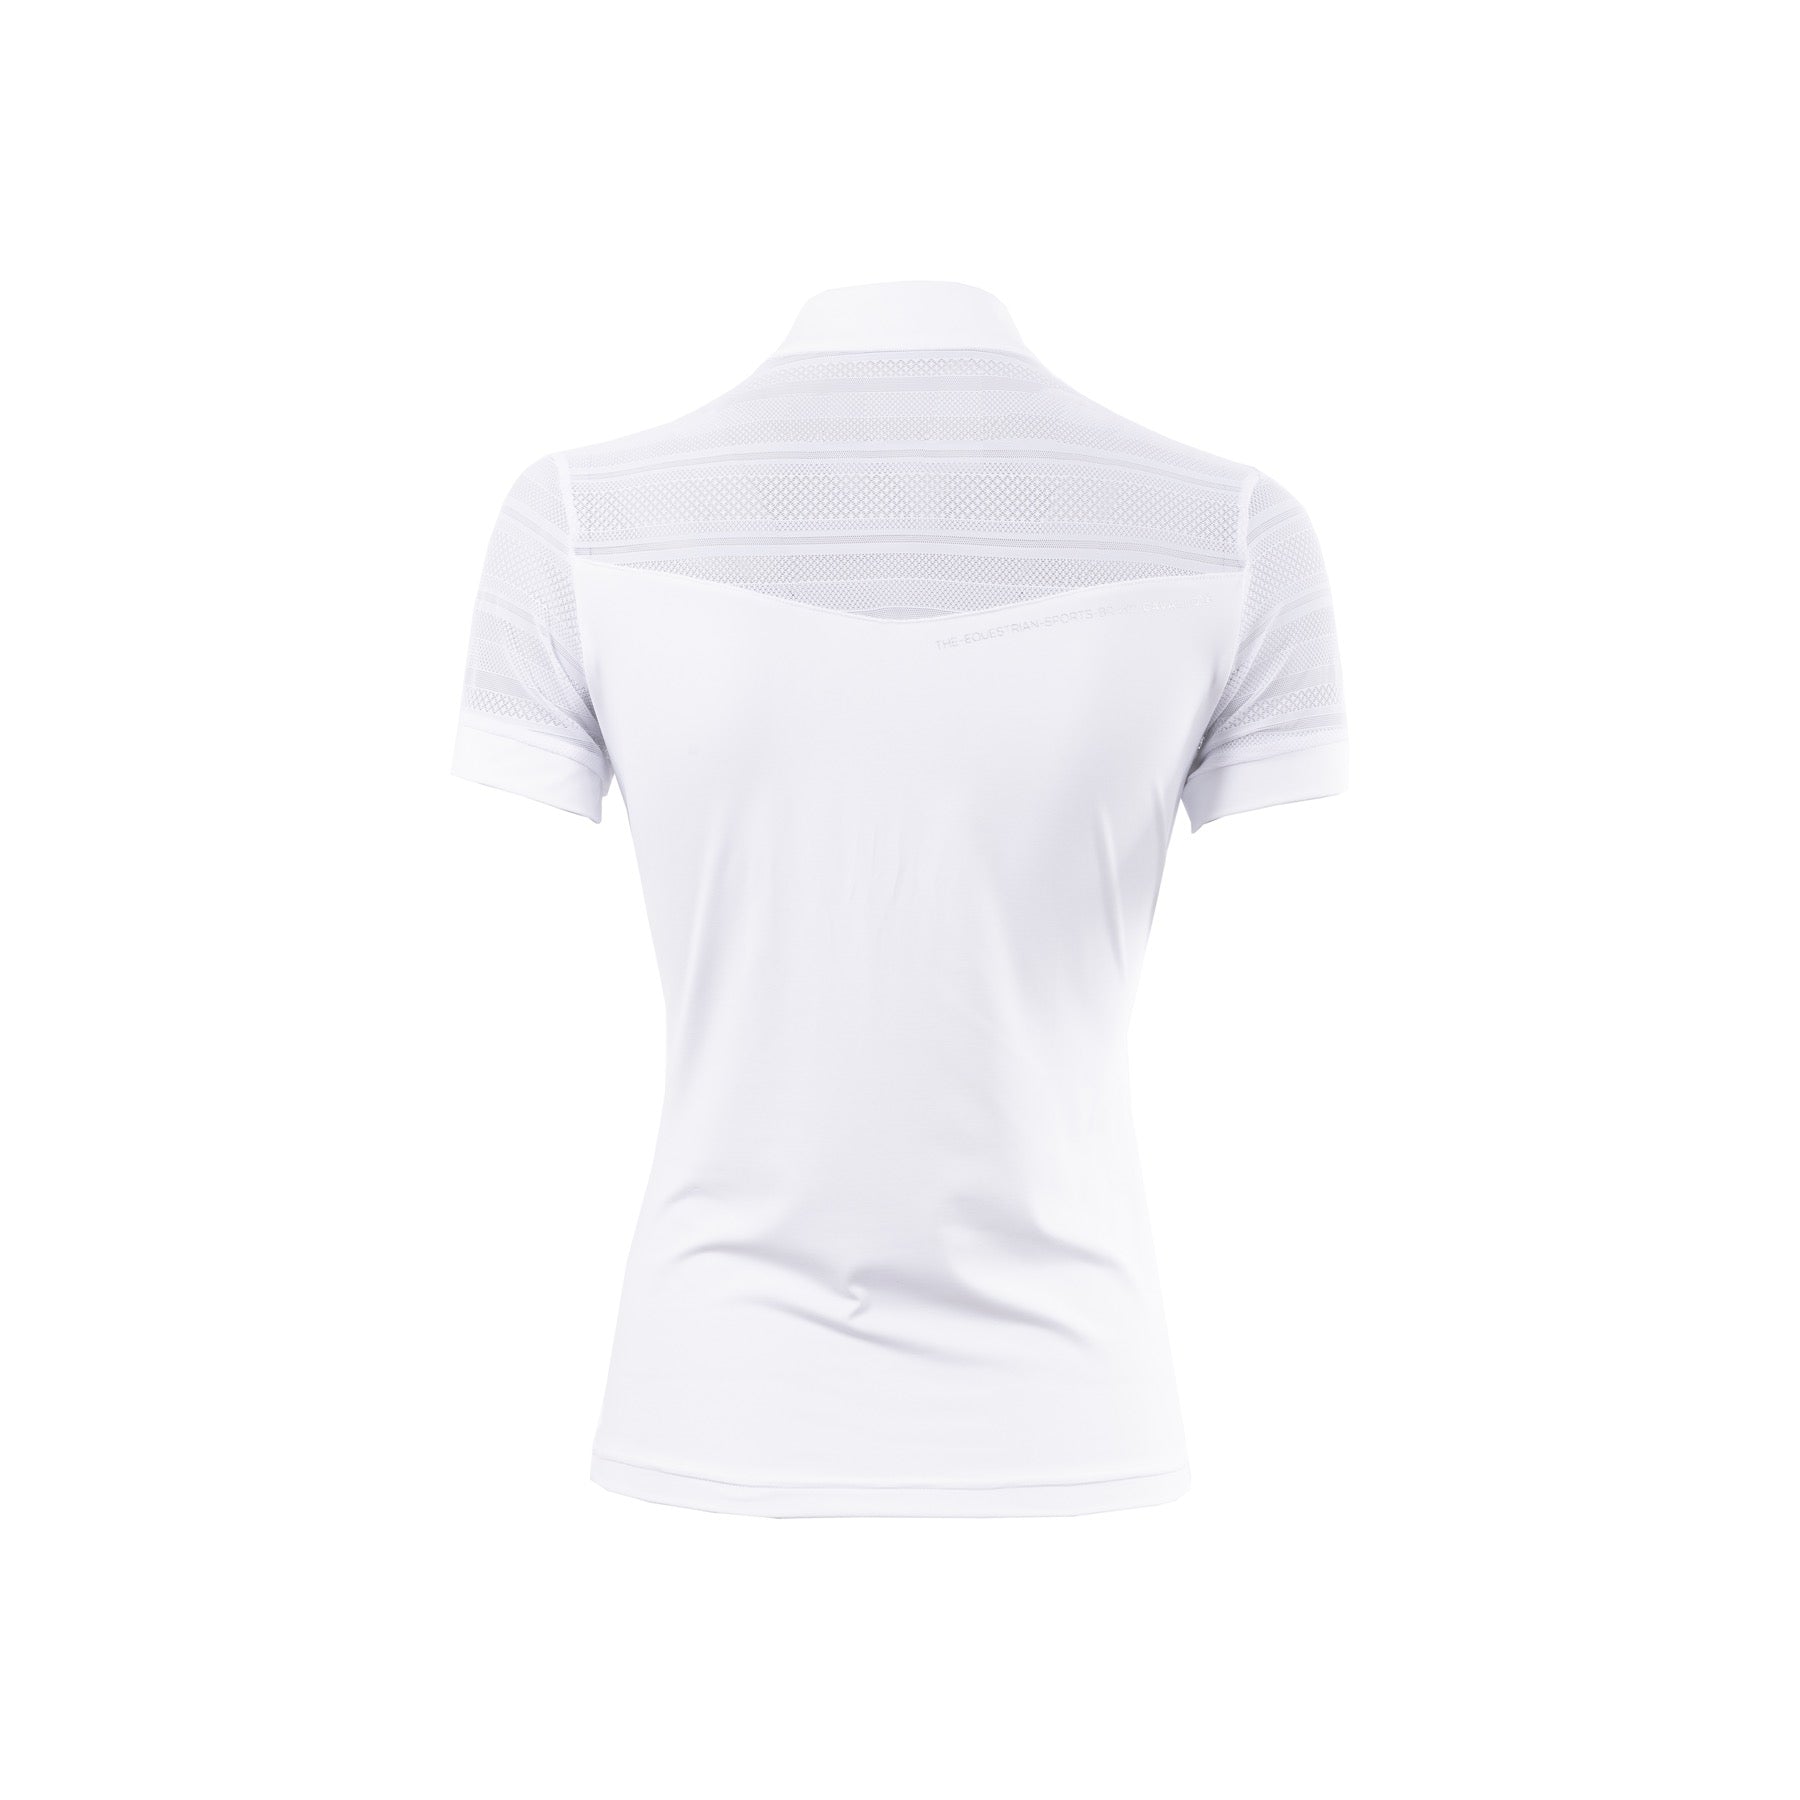 Cavallo FATOU Ladies Competition Shirt, White